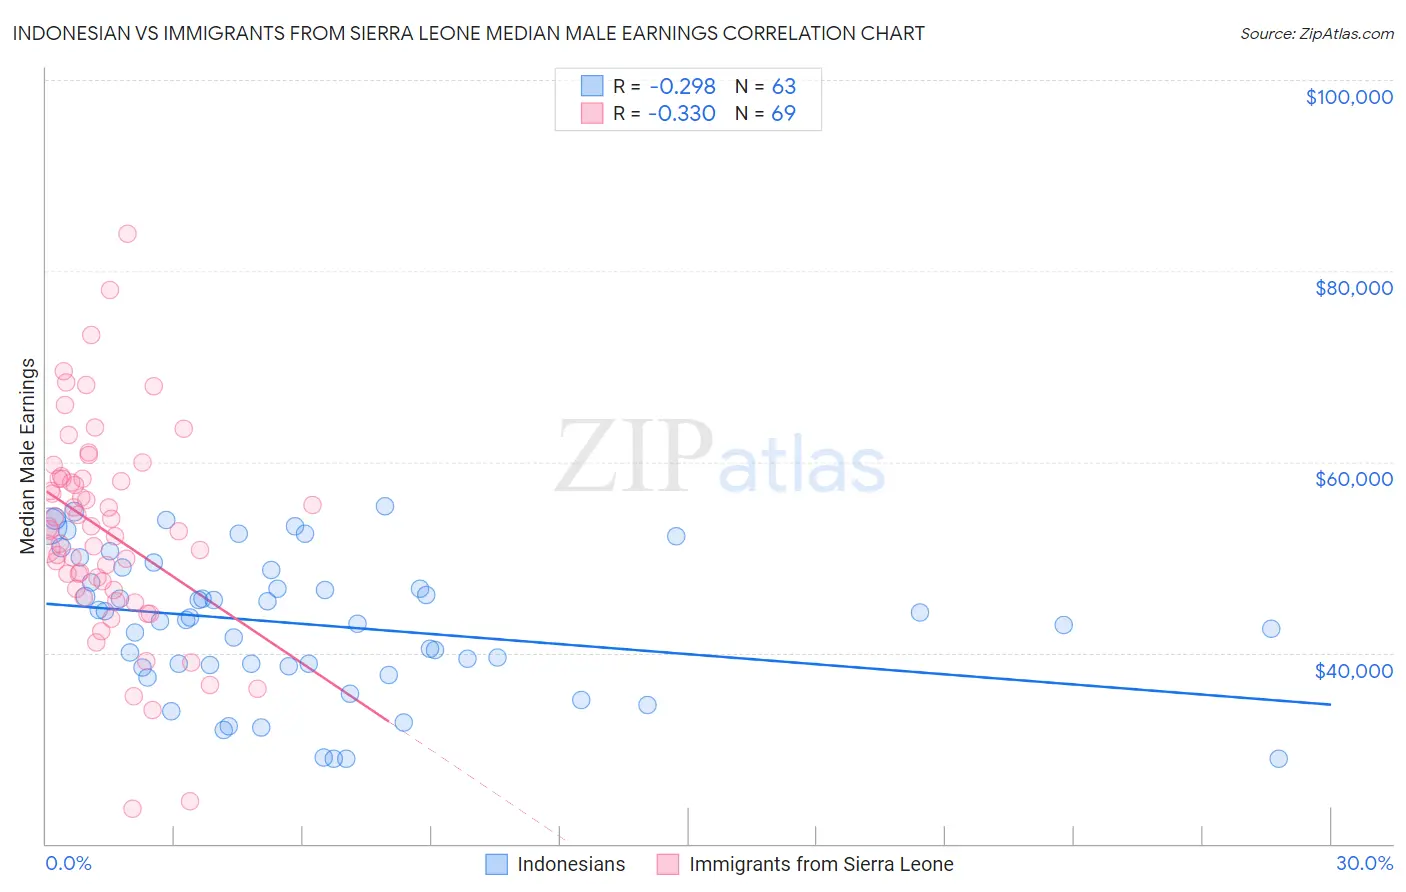 Indonesian vs Immigrants from Sierra Leone Median Male Earnings